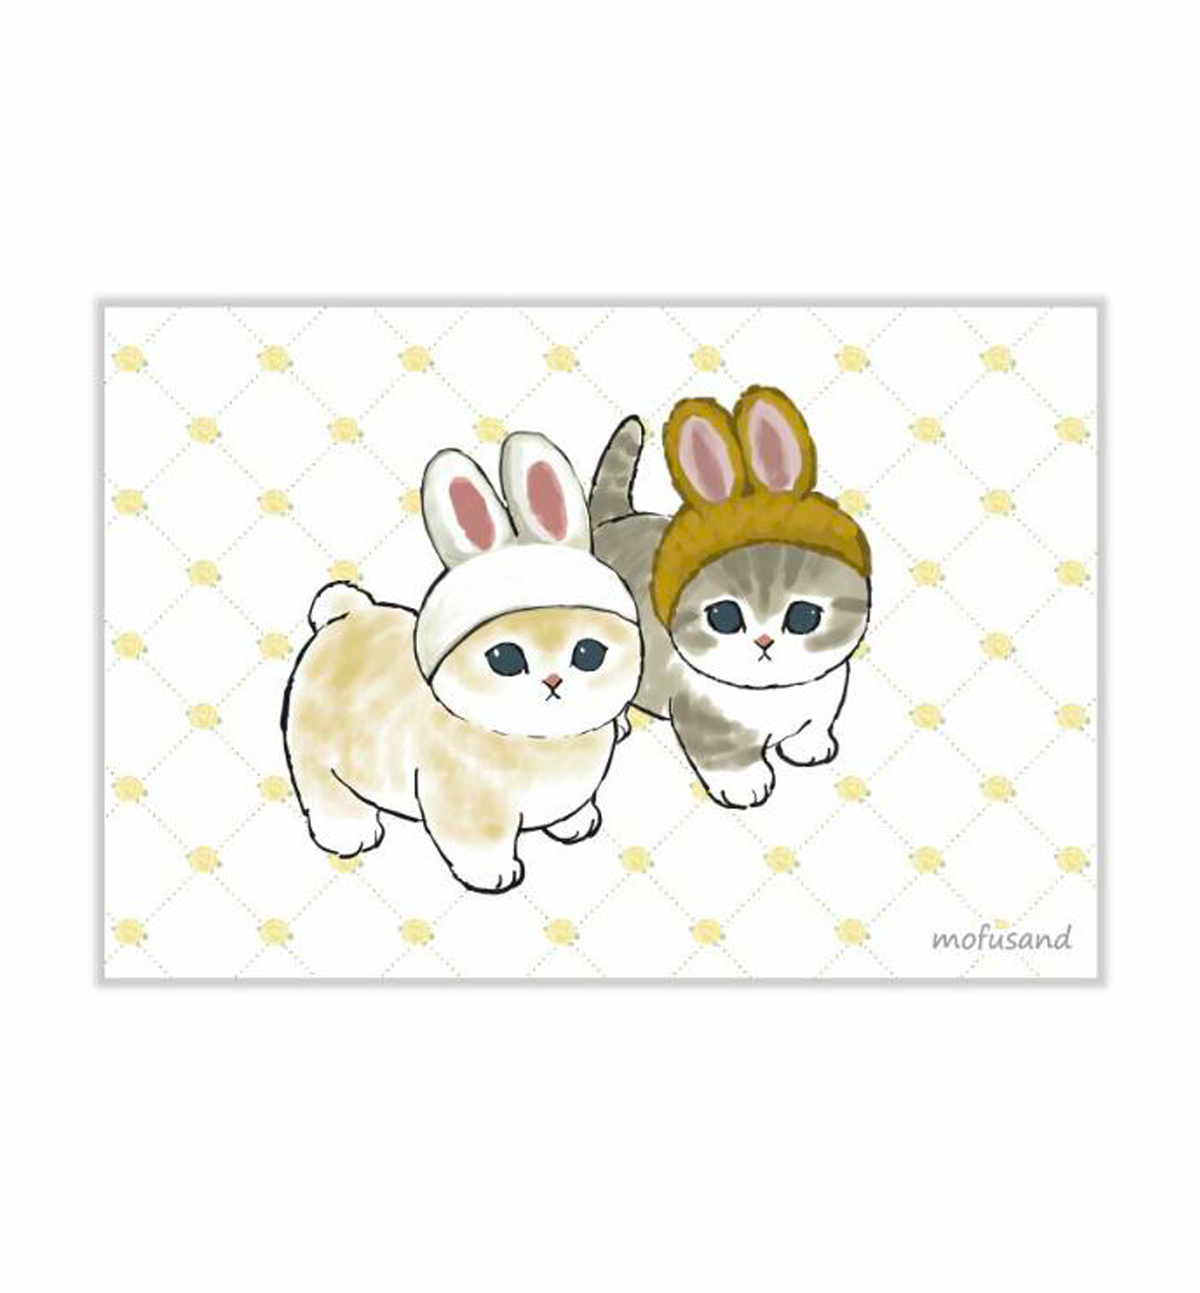 Mofusand Postcard [Bunny]